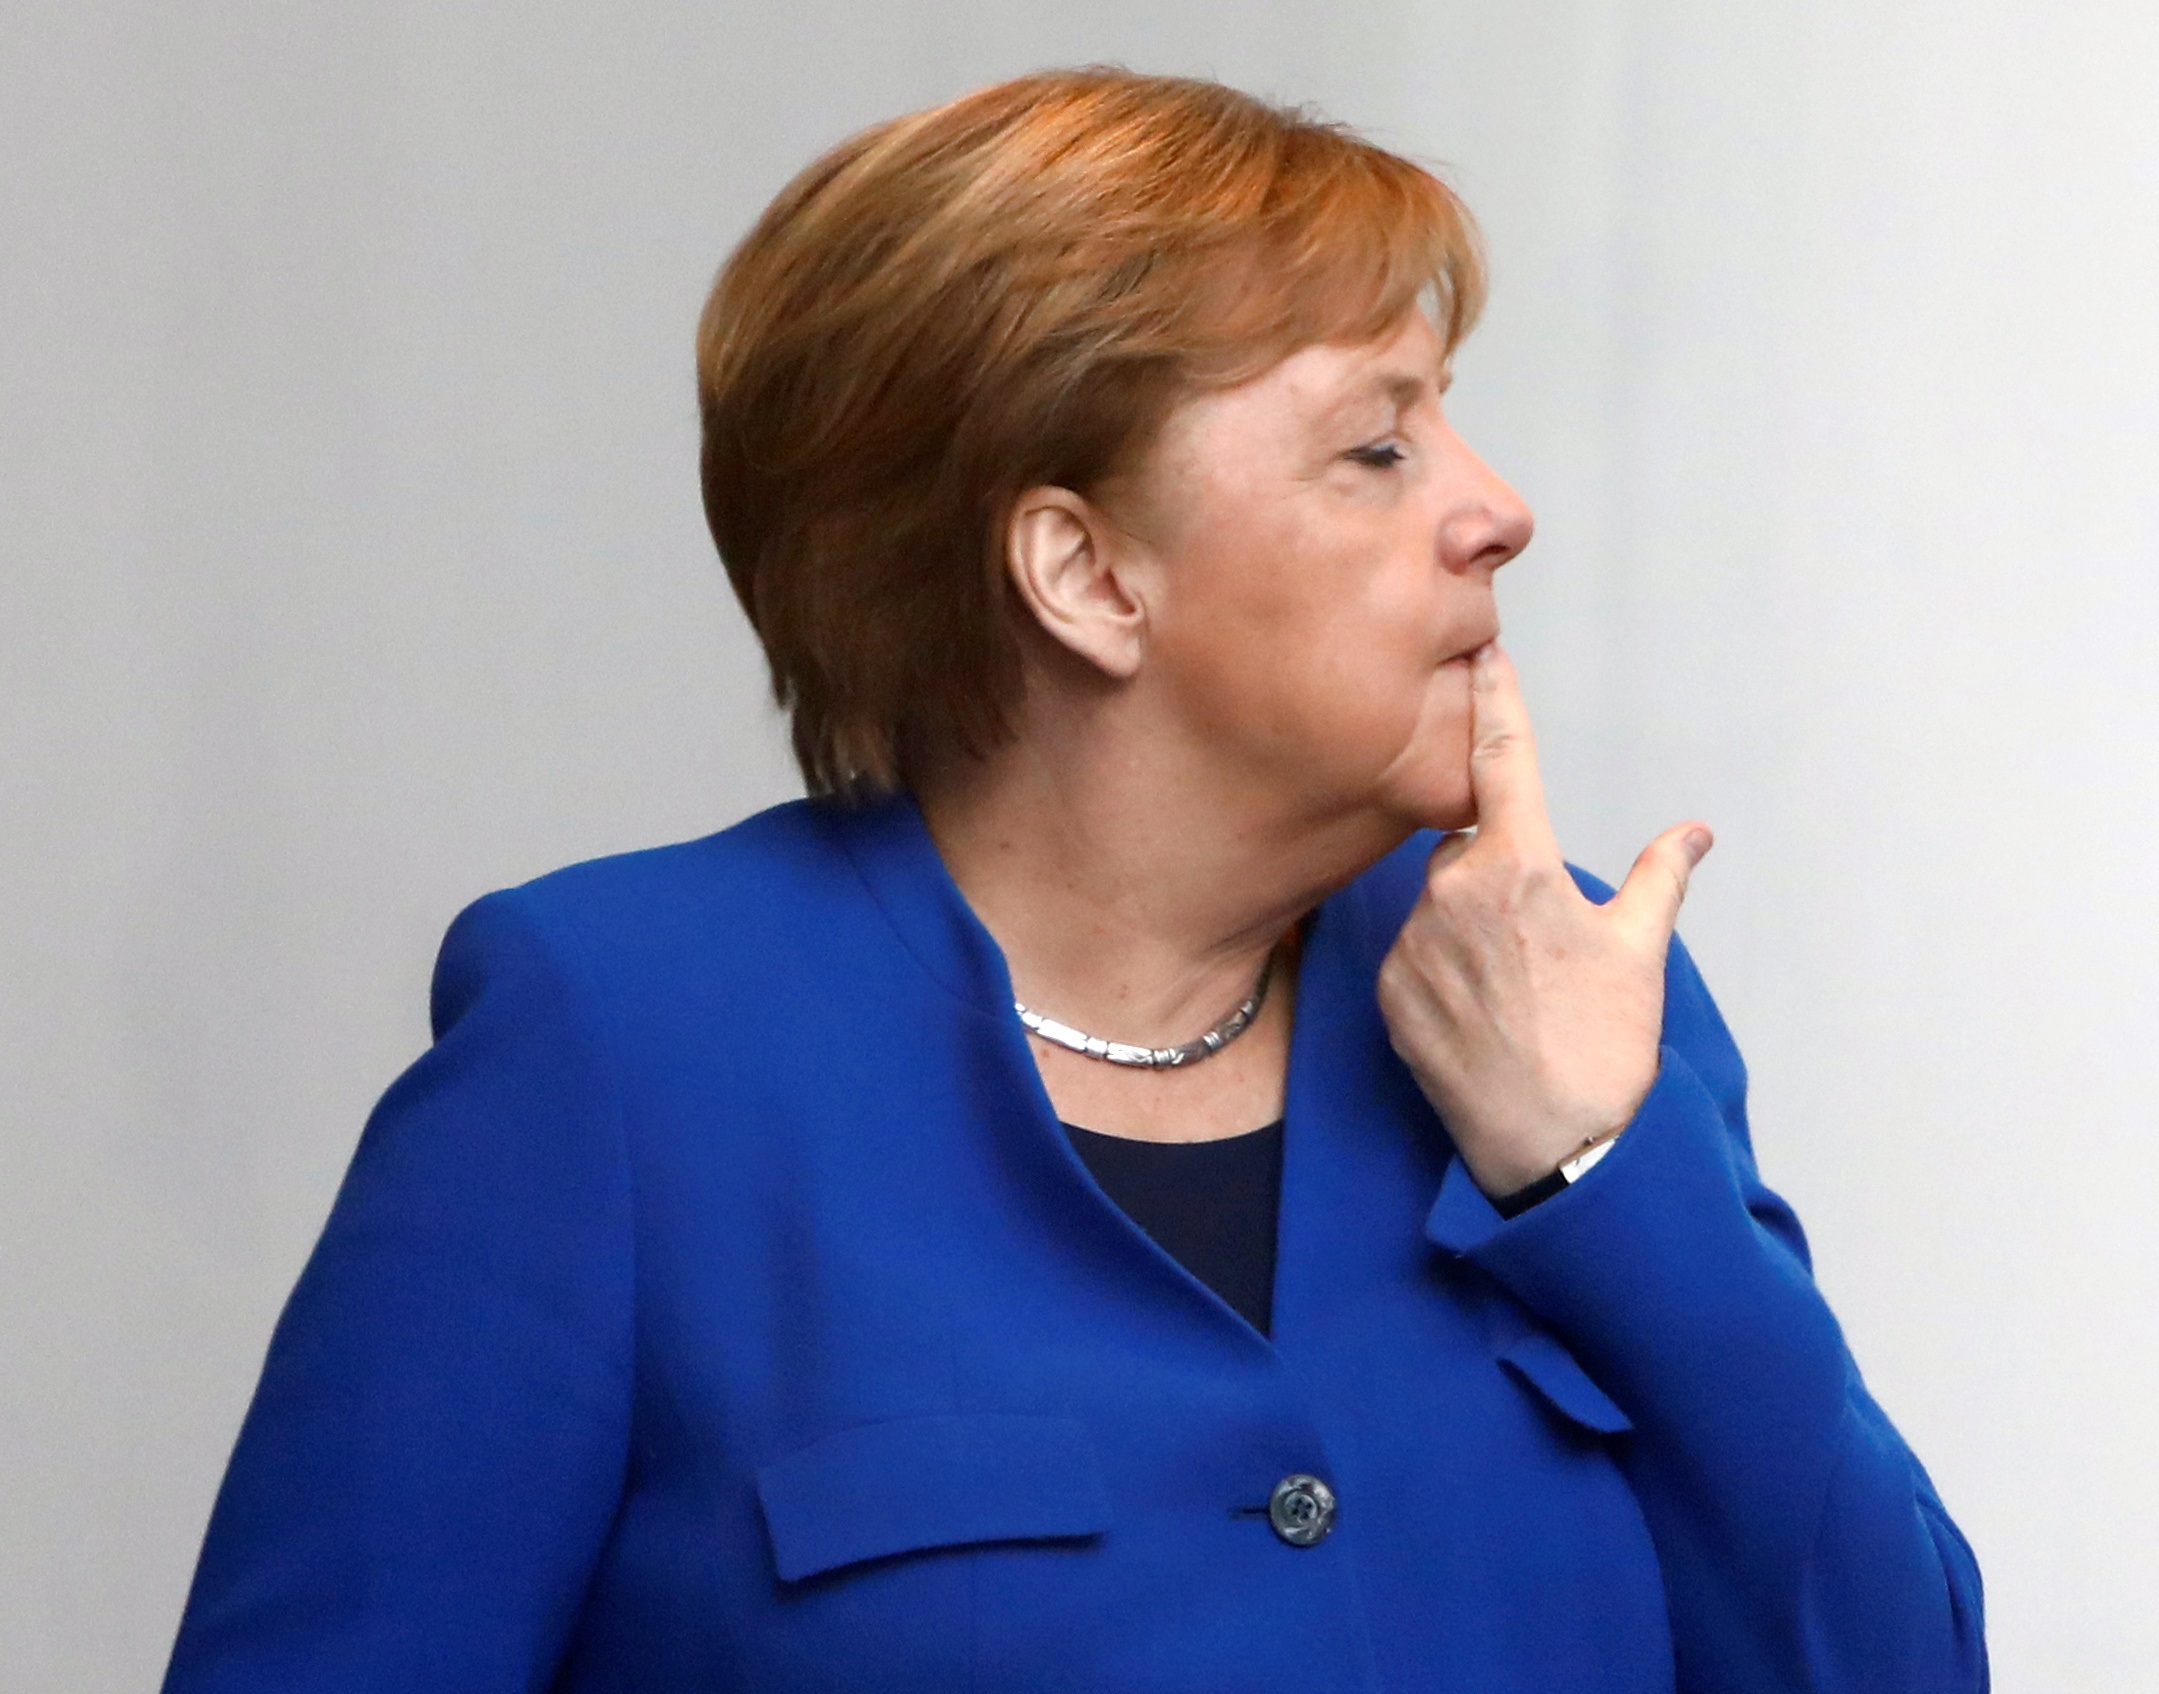 Διάσκεψη Βερολίνου: Η Μέρκελ έτρωγε τα νύχια της από το άγχος! [Pics]